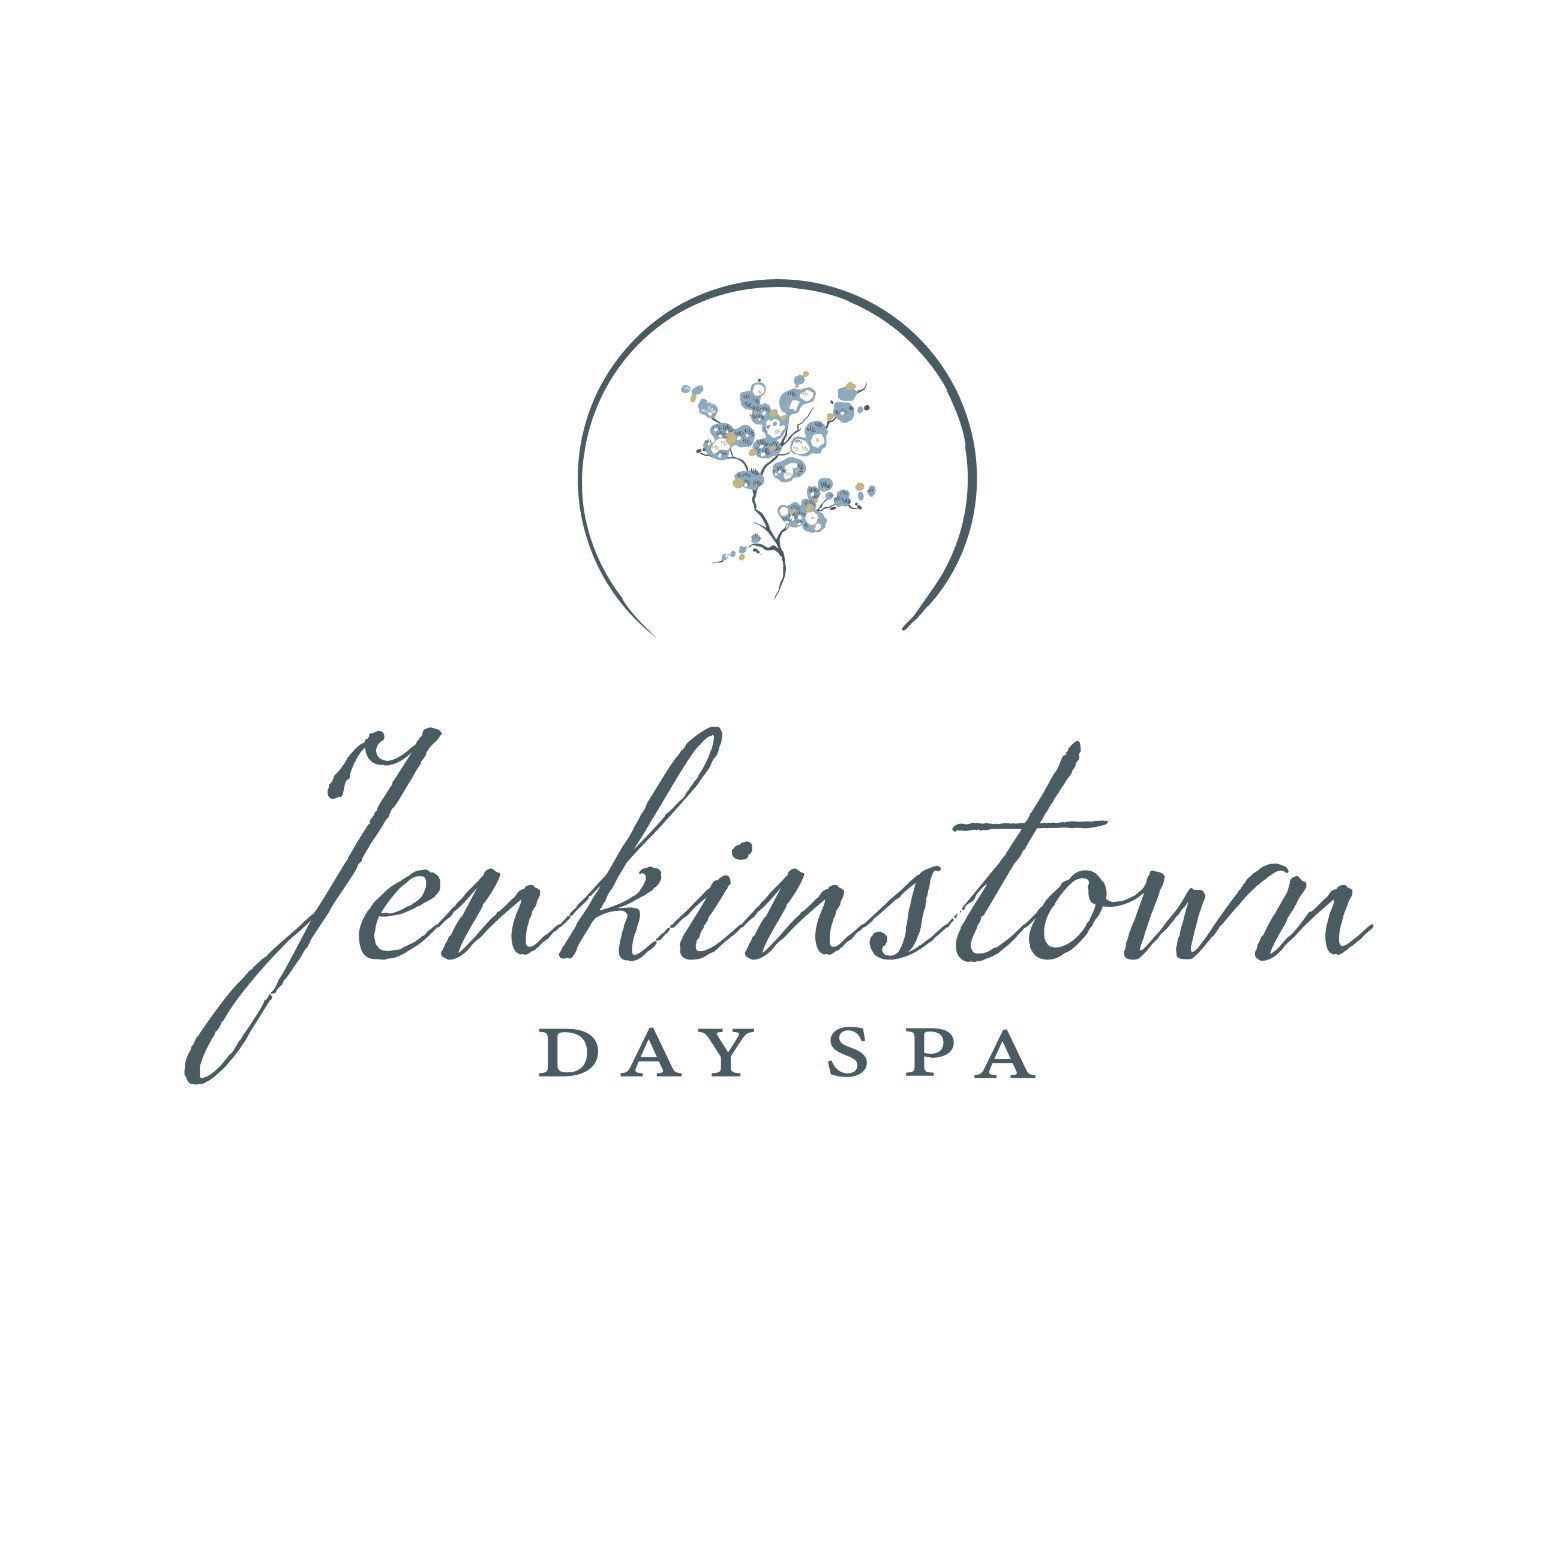 Jenkinstown Day Spa, 48 Jenkinstown Road, New Paltz, 12561